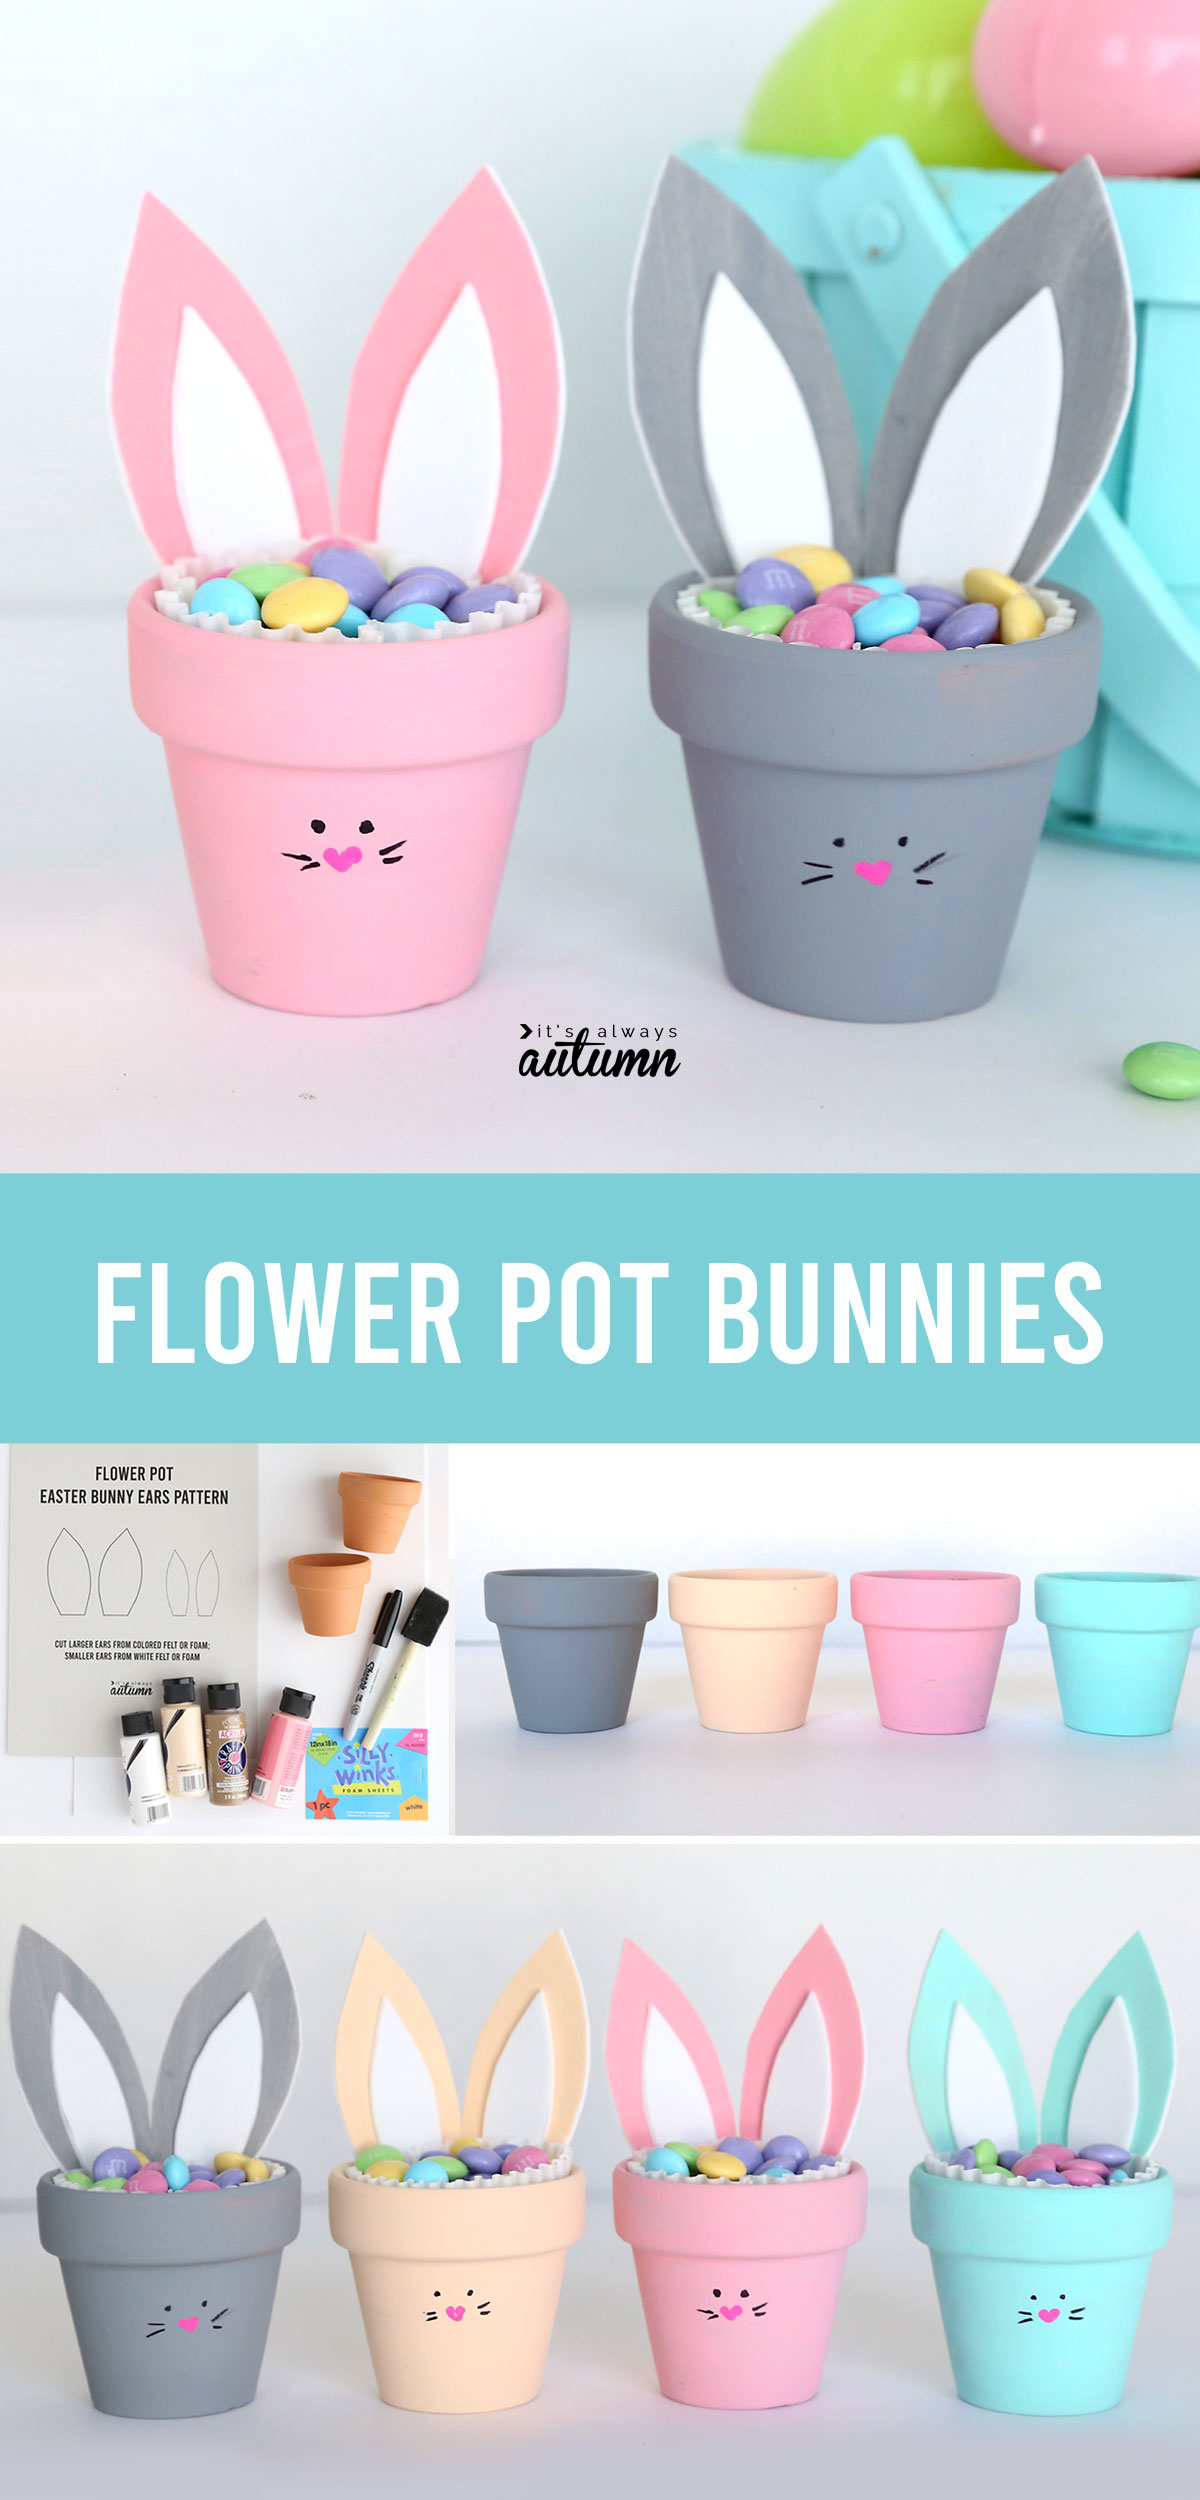 Flower pot bunnies craft; craft supplies; painted flower pots